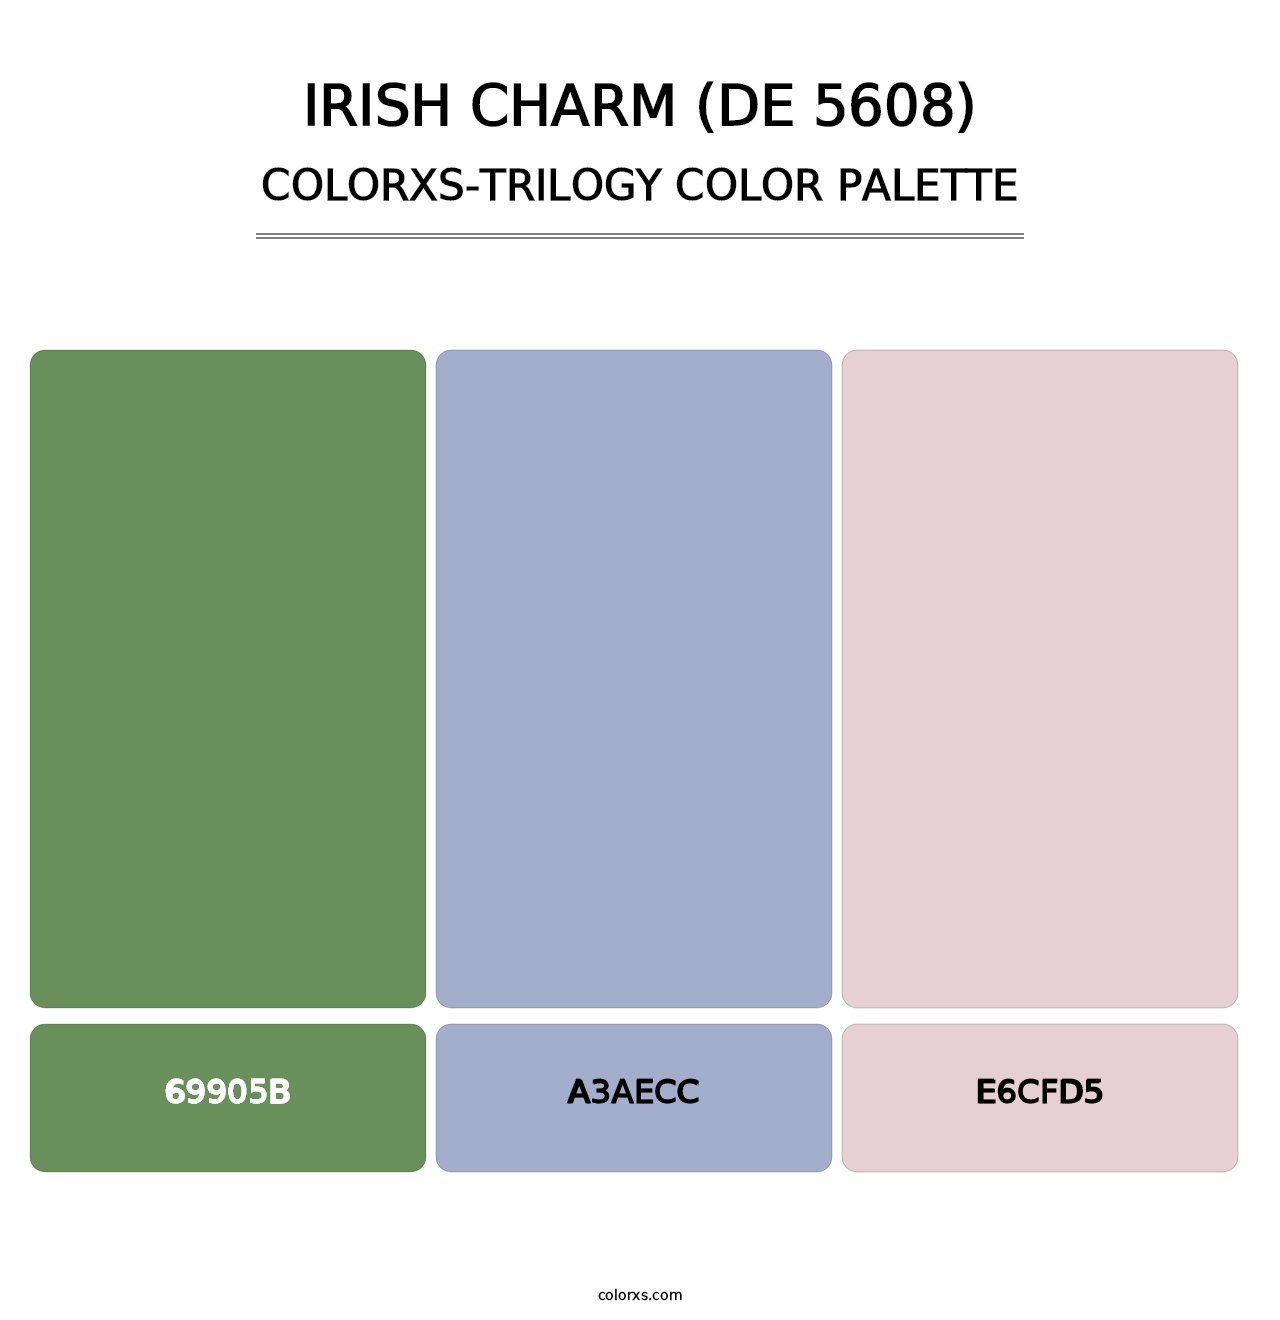 Irish Charm (DE 5608) - Colorxs Trilogy Palette